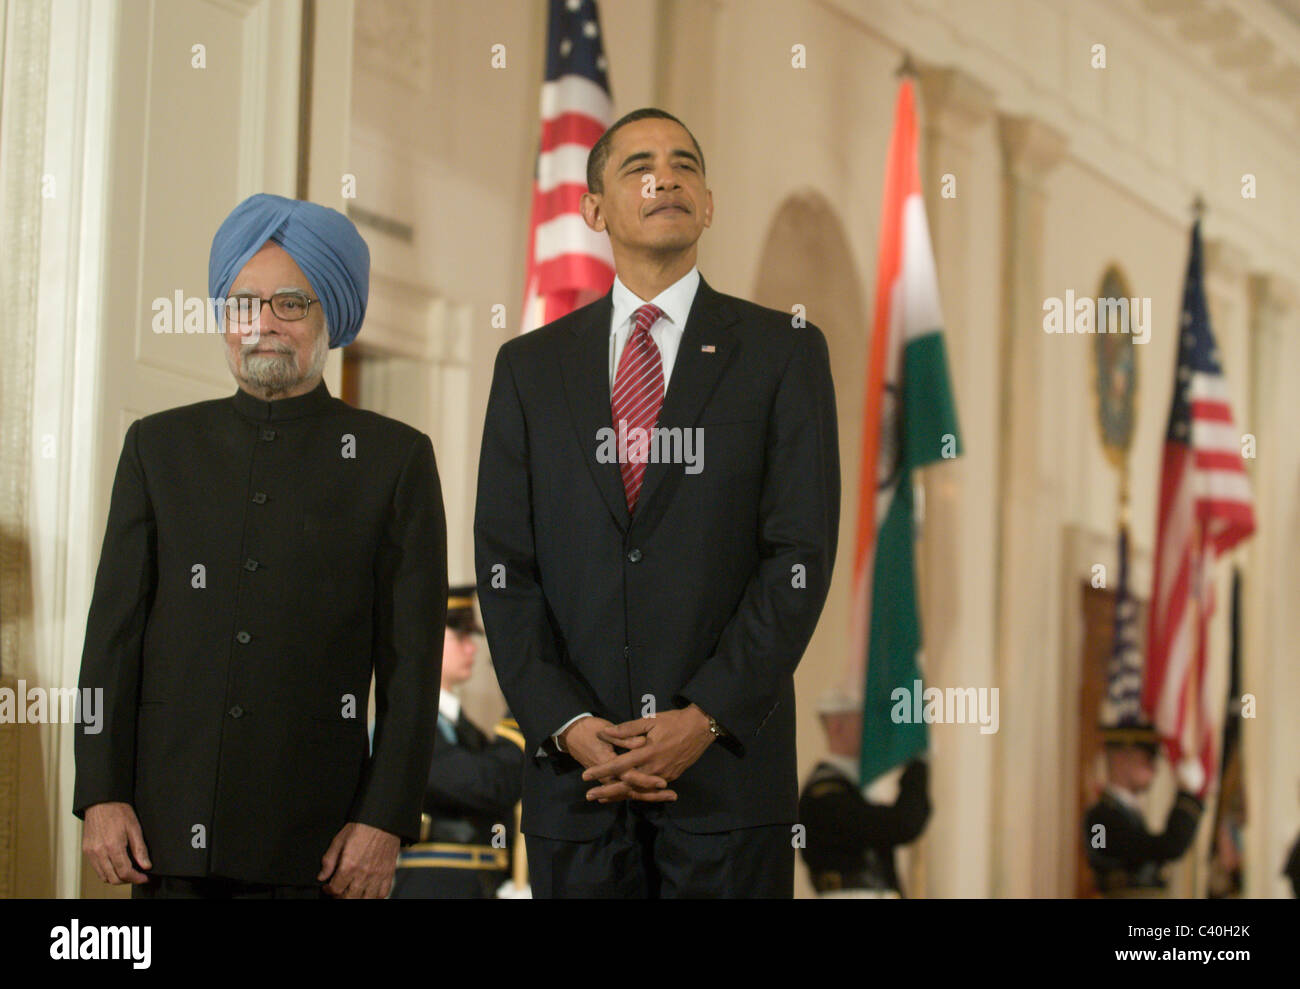 US-Präsident Barack Obama und der indische Premierminister Manmohan Singh teilnehmen an einer offiziellen Begrüßung im East Room des Stockfoto